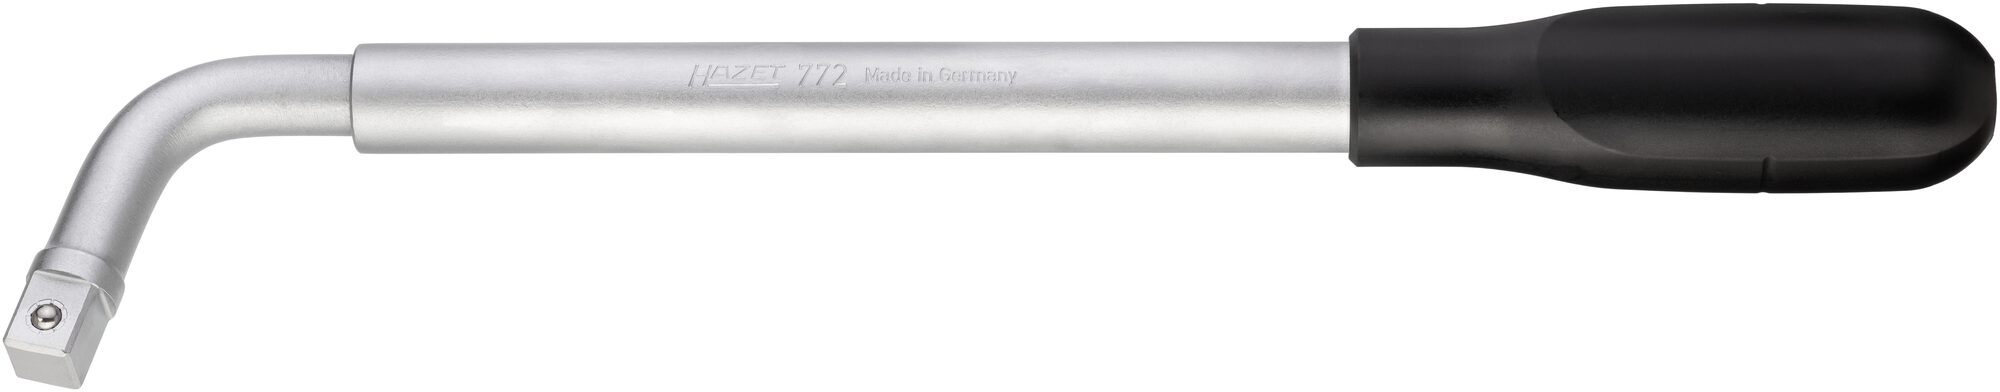 HAZET Ausziehbarer Radmuttern-Schlüssel 772 · Vierkant massiv 12,5 mm (1/2 Zoll) · 535 mm